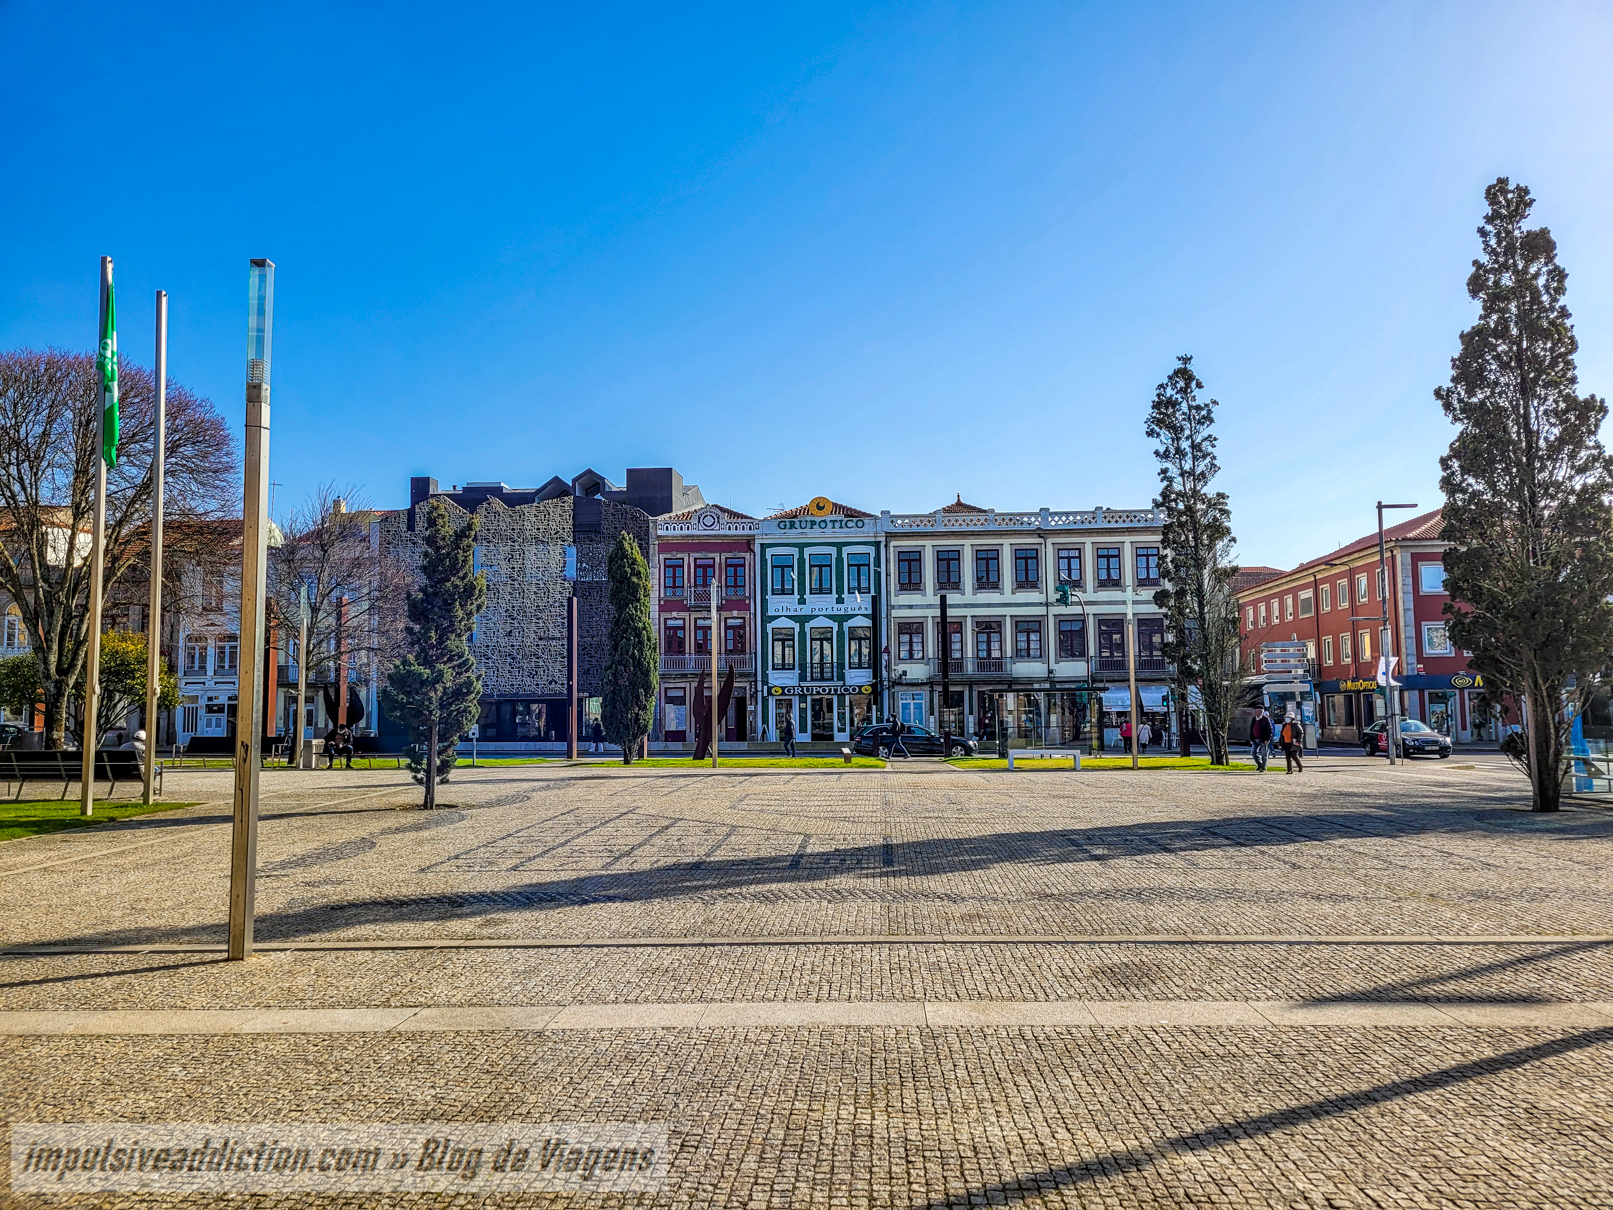 Almada Square to visit in Póvoa de Varzim